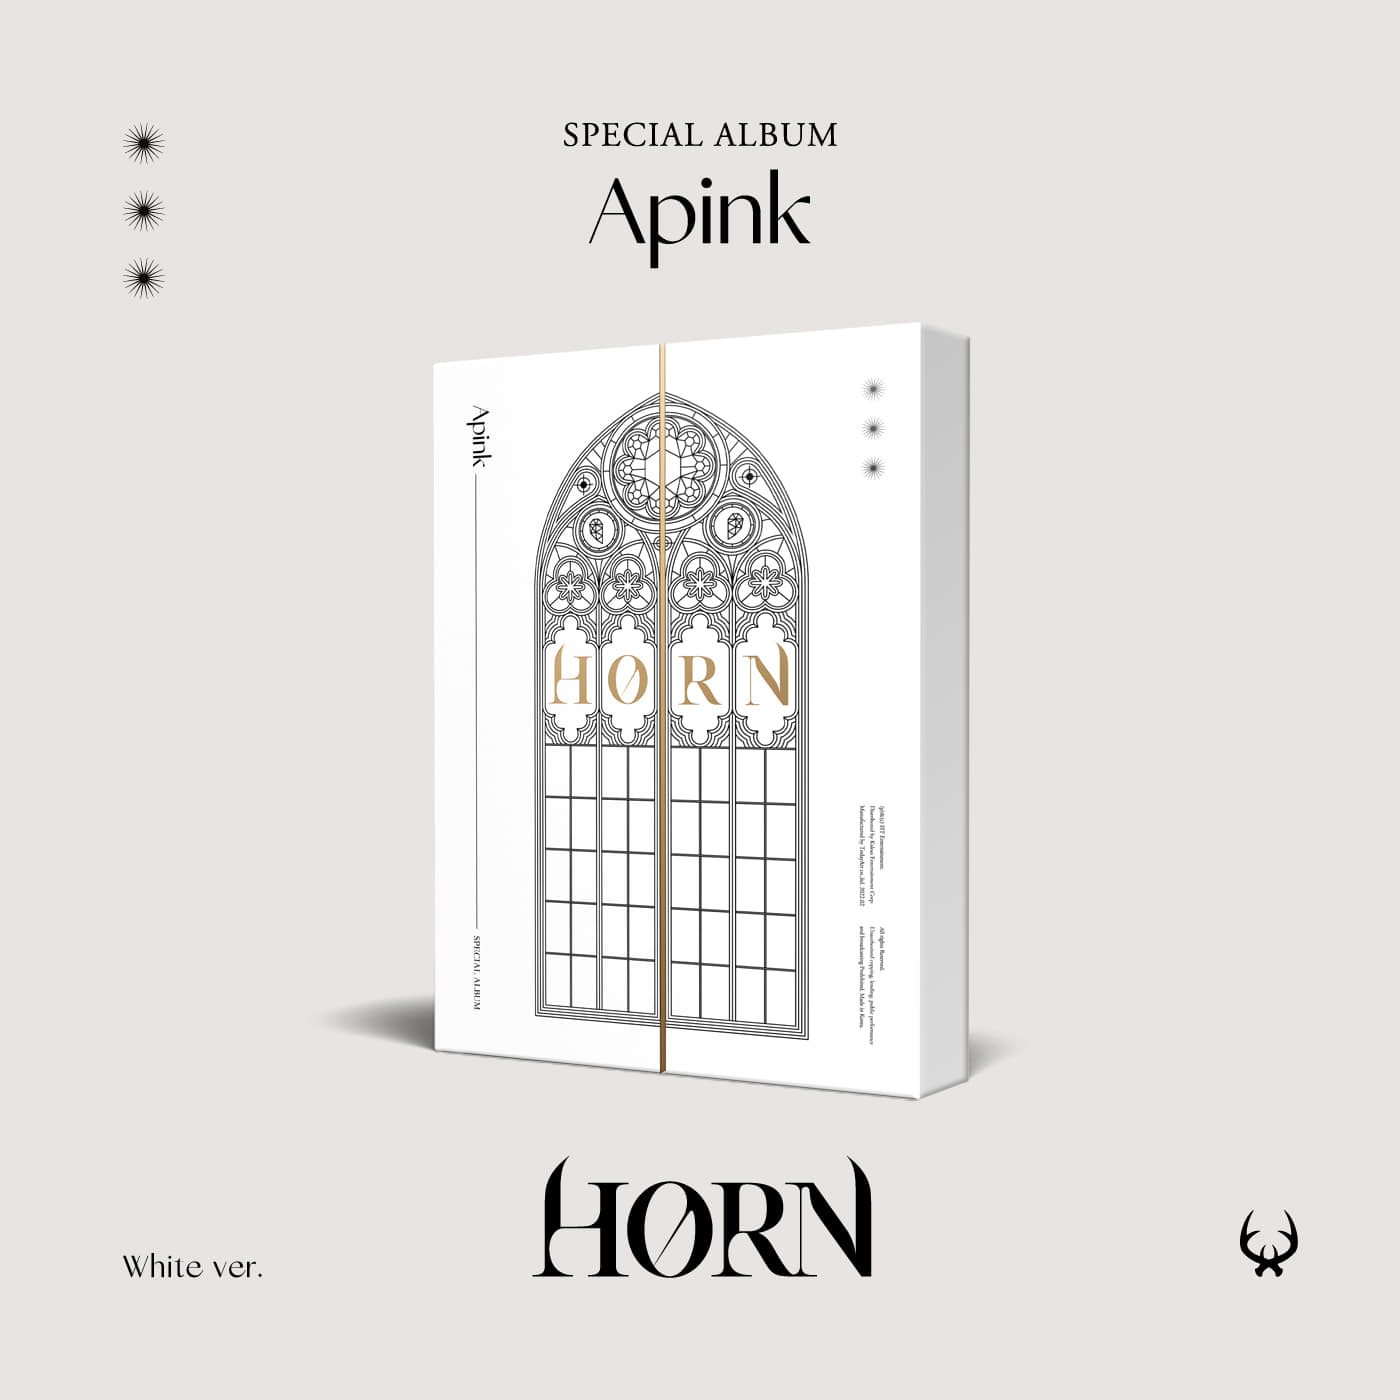 에이핑크(Apink) - 스페셜 앨범 [HORN] (White Ver.)